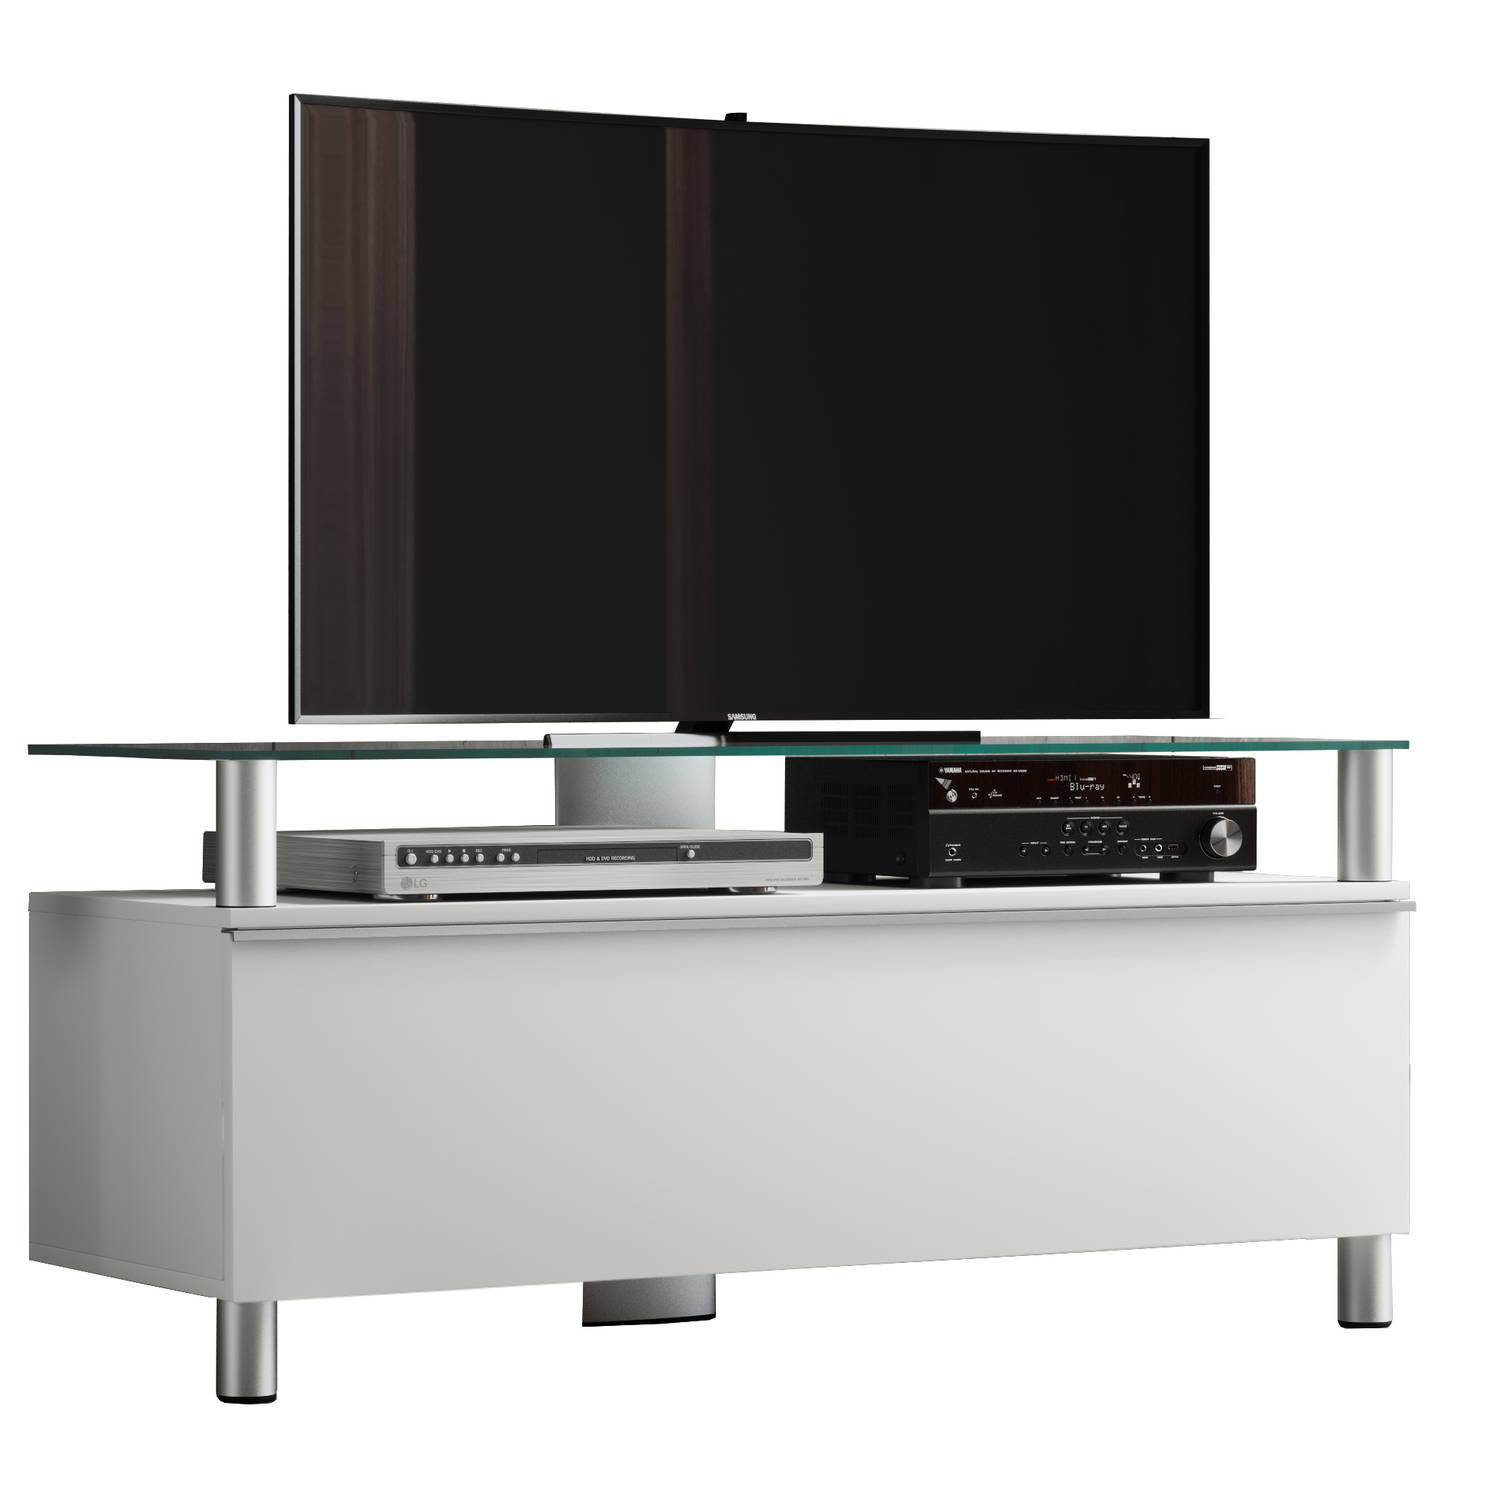 Clano TV-meubels met 1 lade en 1 glazen legger, Wit lak, zwart glas.